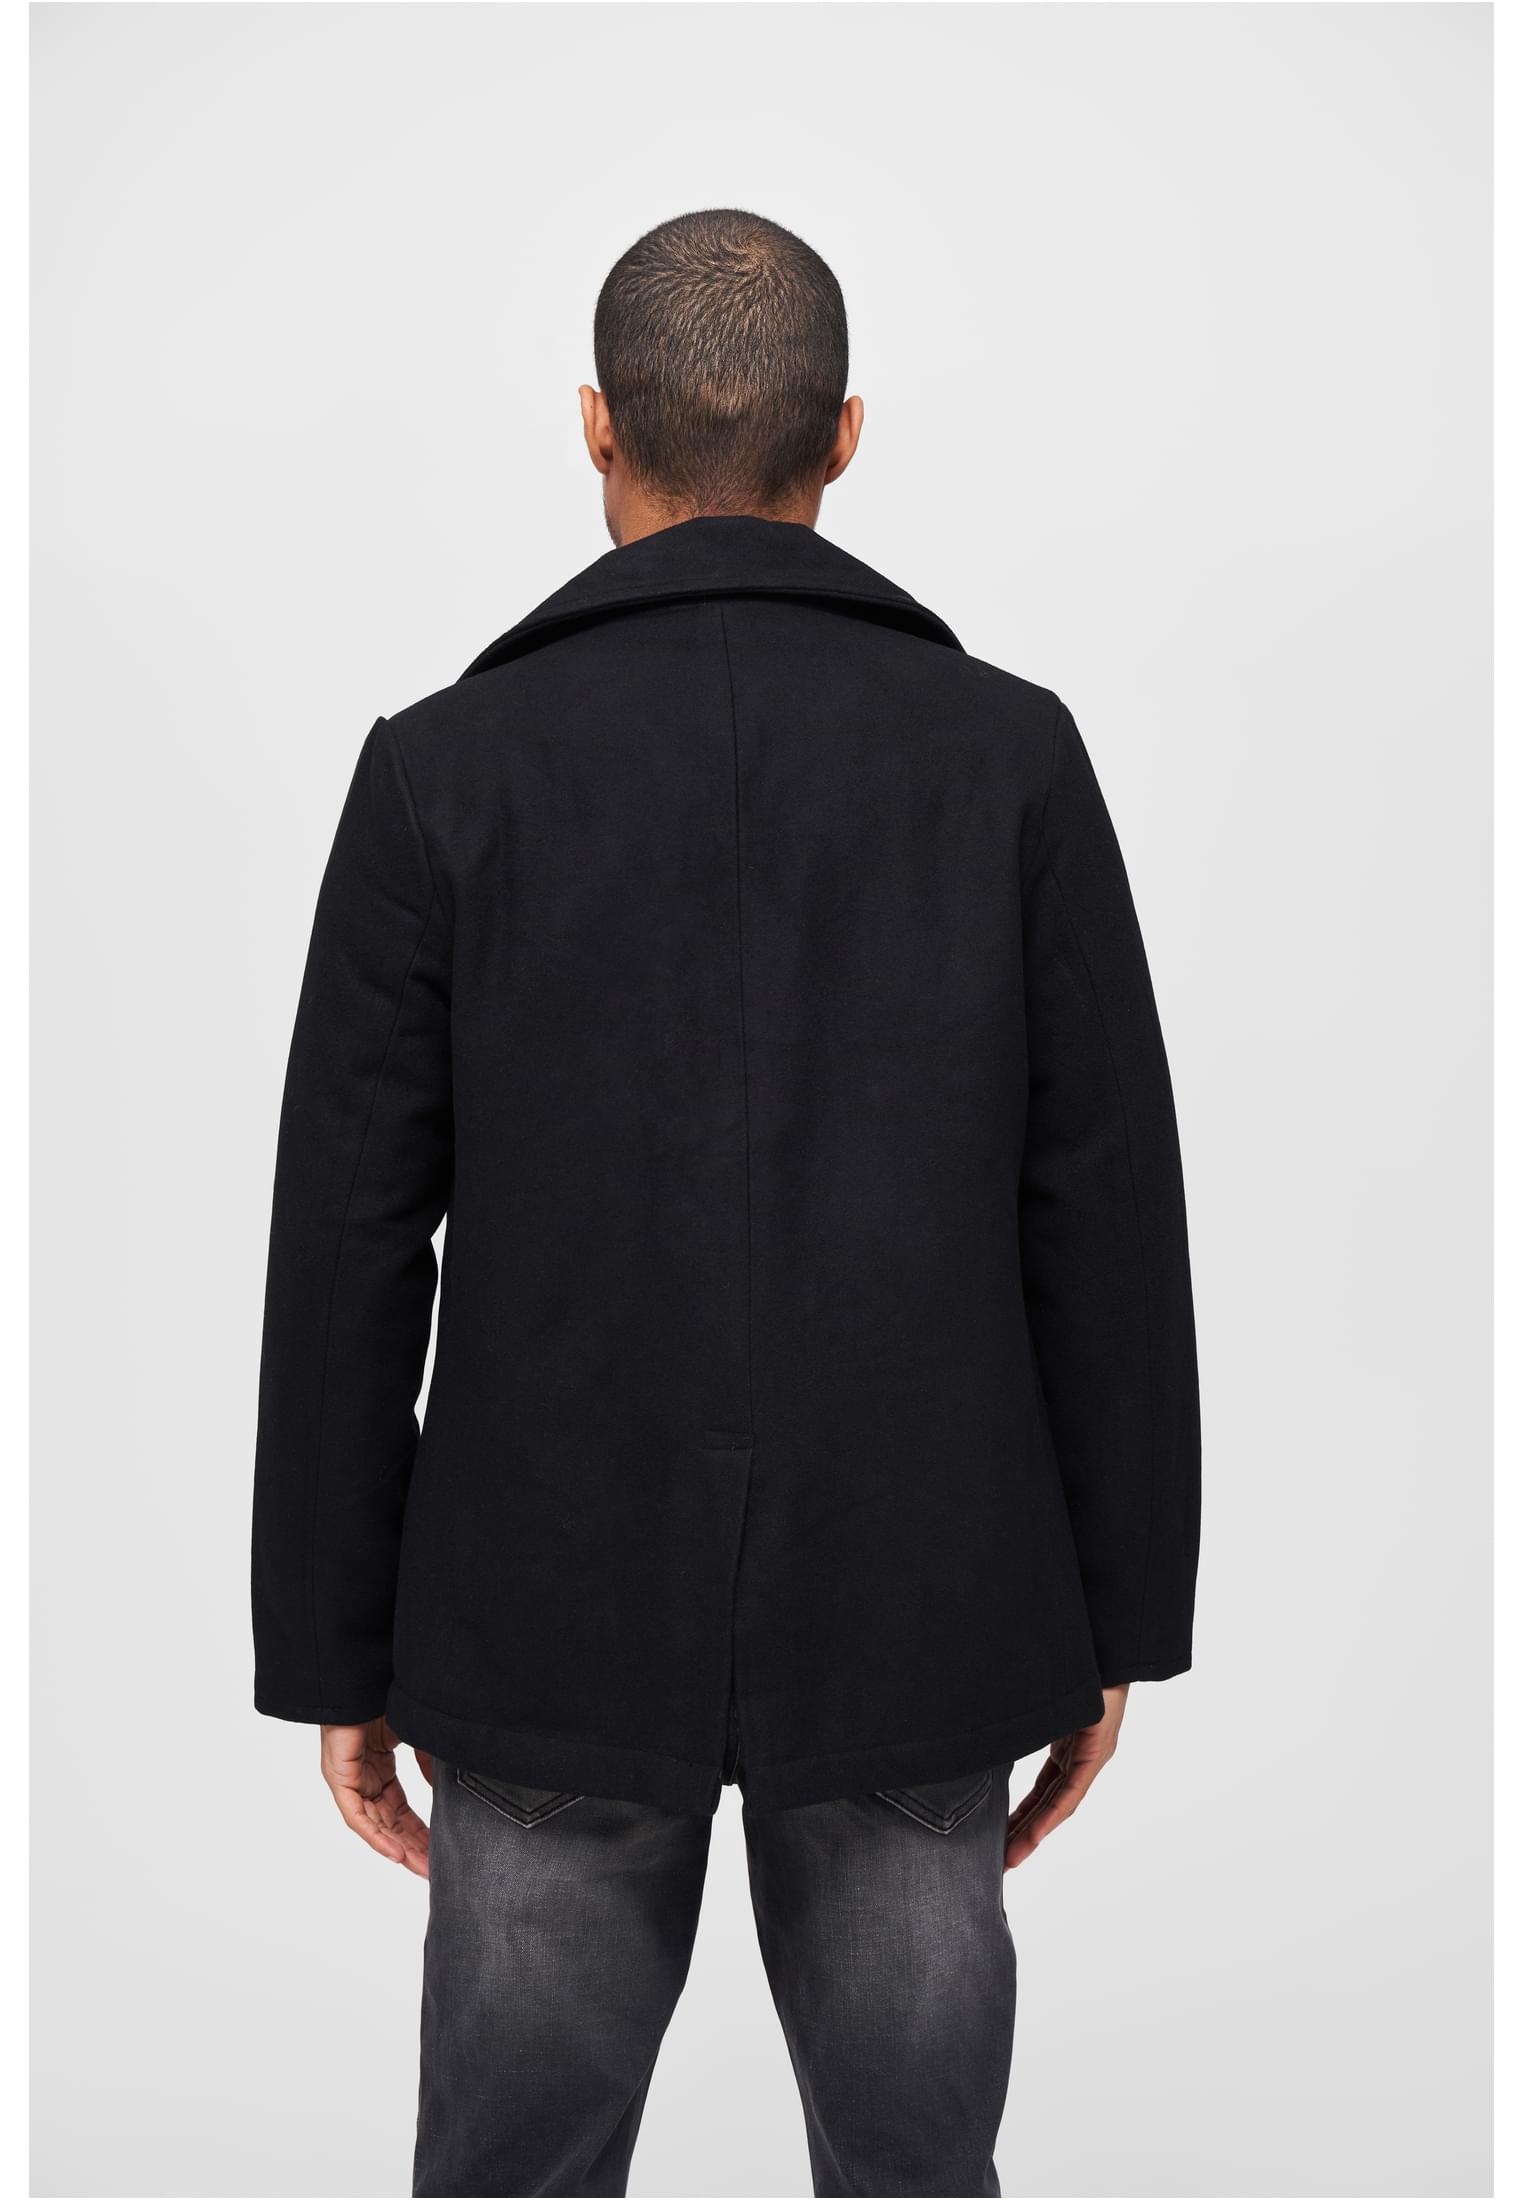 Jacken Pea Coat in Farbe black